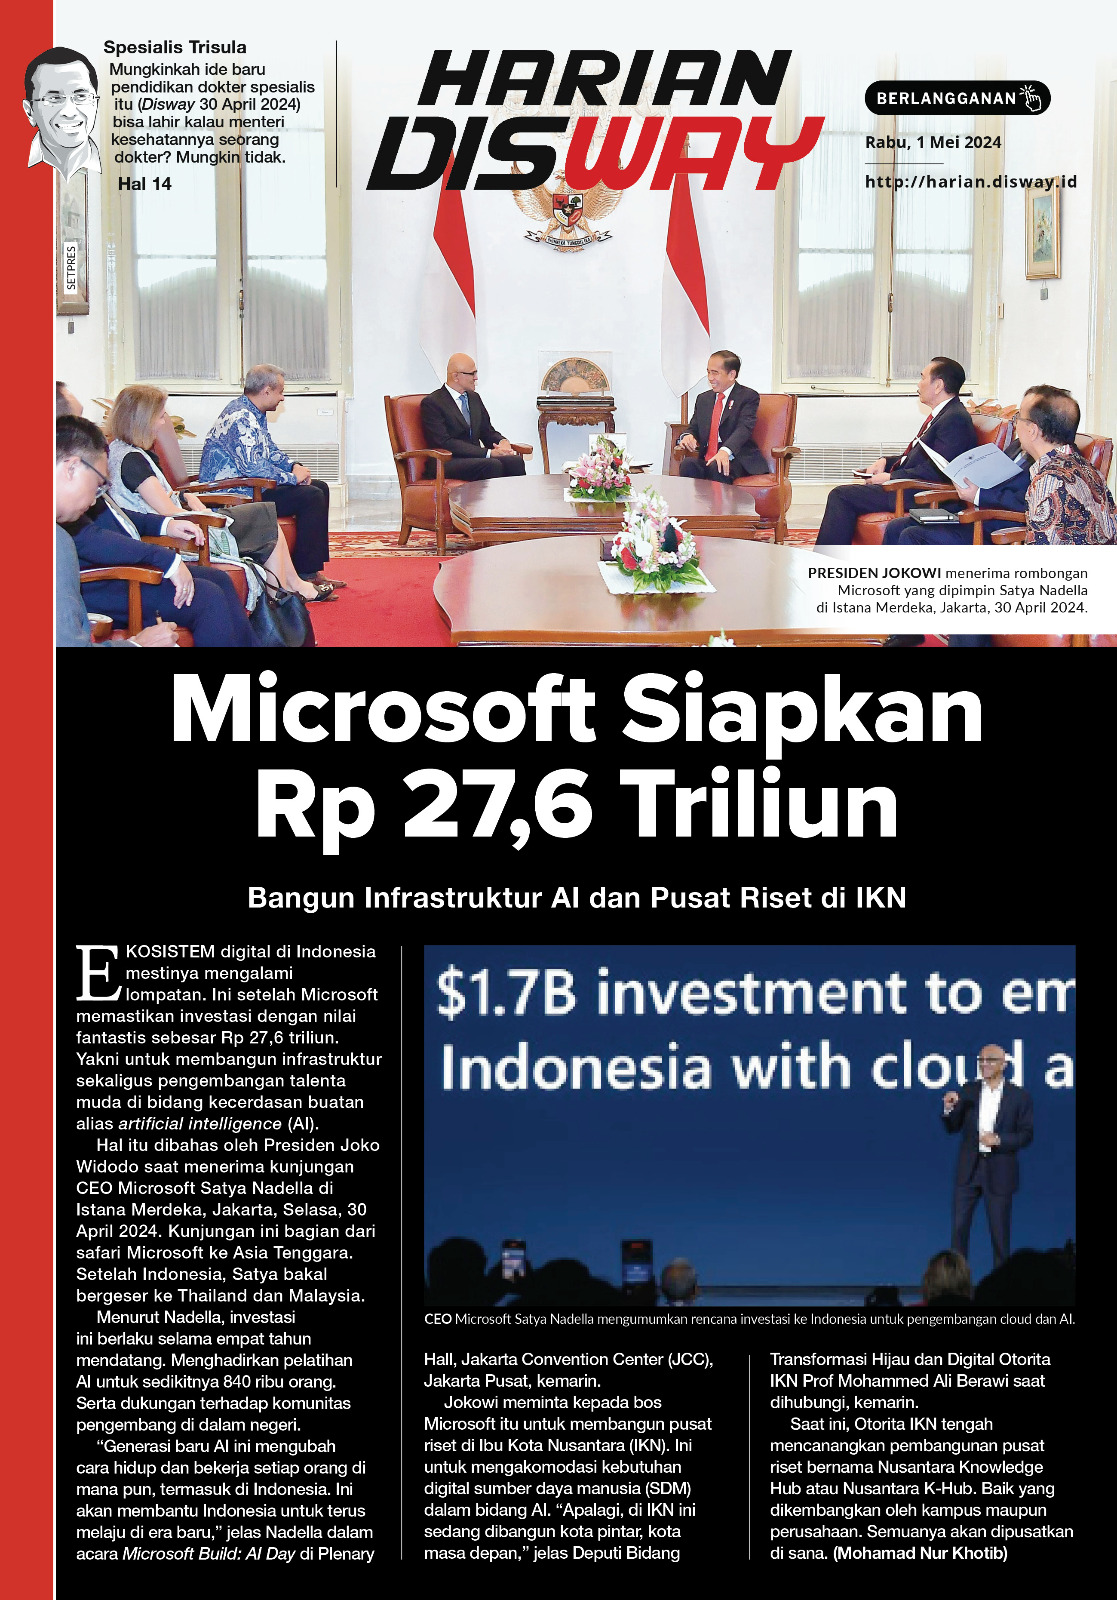 Microsoft Siapkan Rp 27,6 Triliun